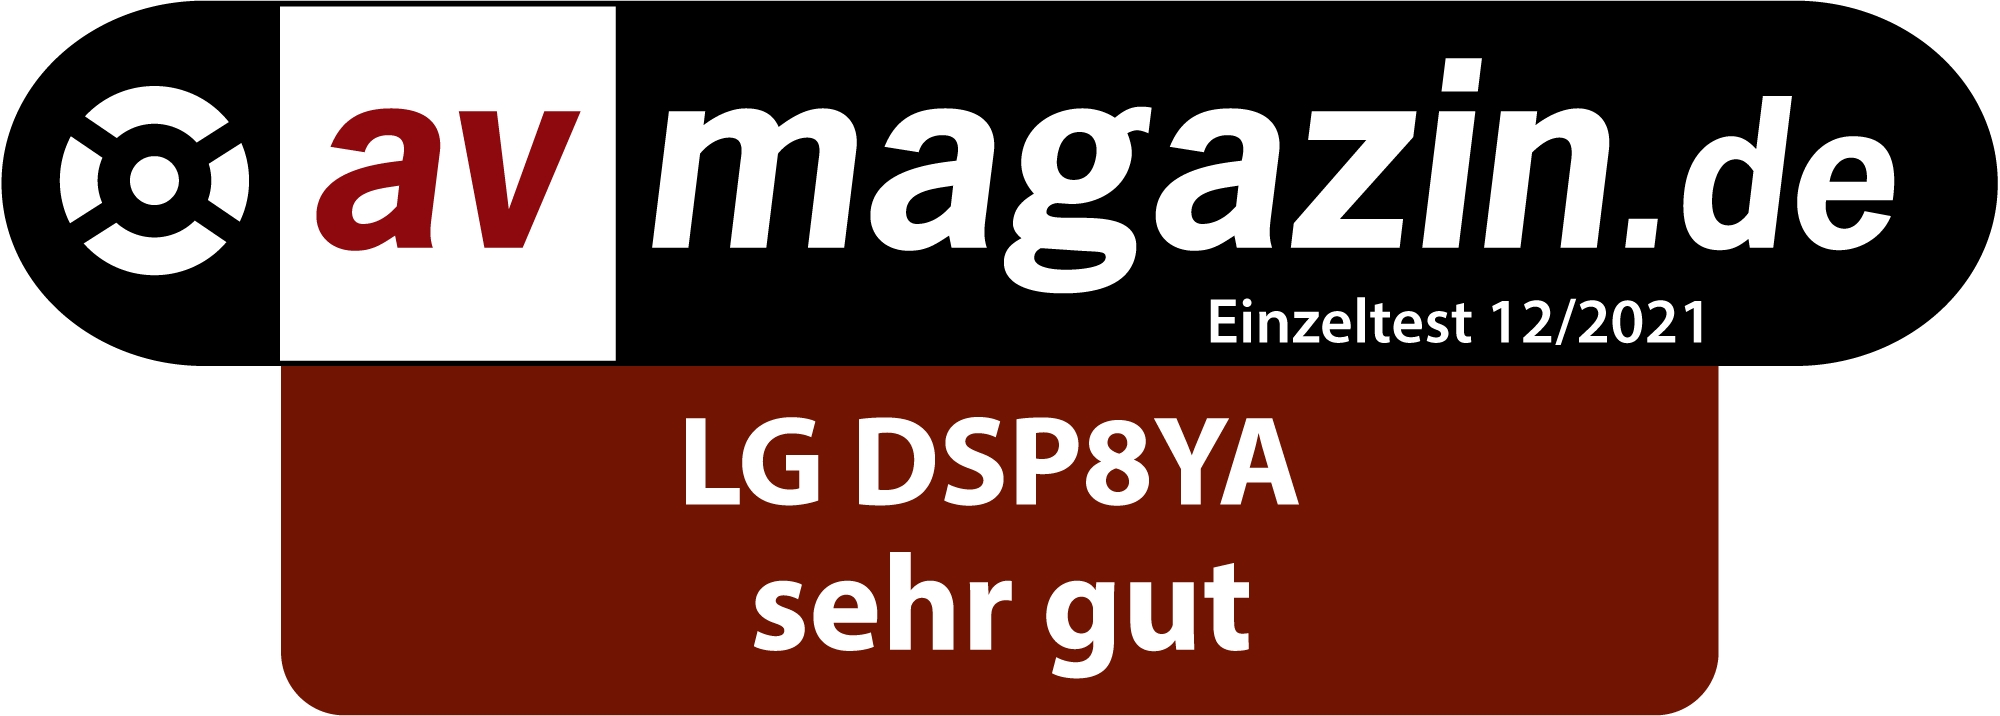 LG DSP8YA Soundbar AV magazine.de 